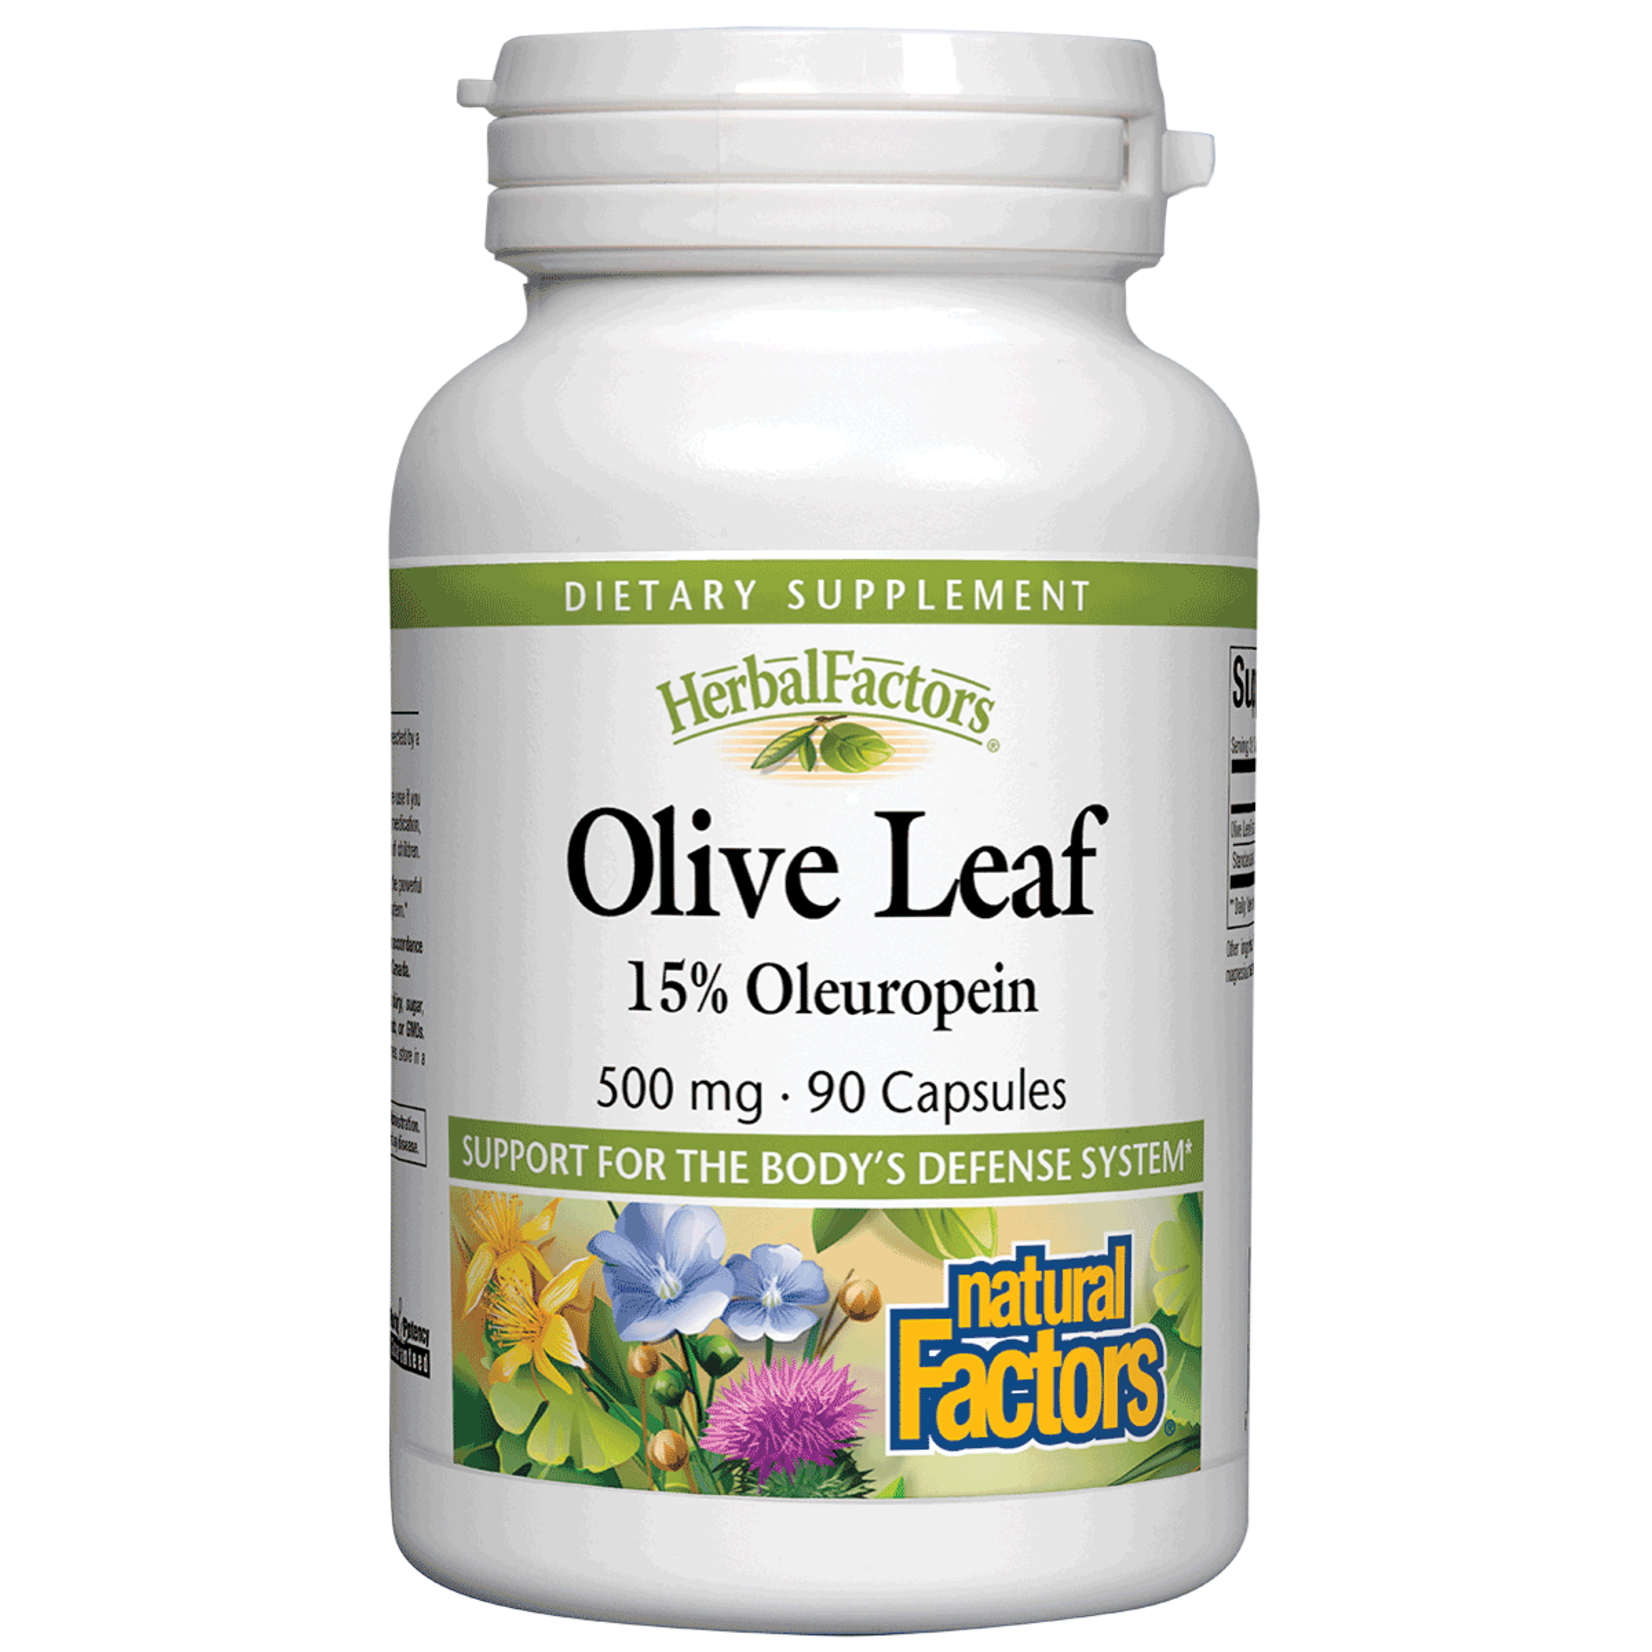 Natural Factors Natural Factors - Olive Leaf 500 mg 15% Oleuropein - 90 Veg Capsules